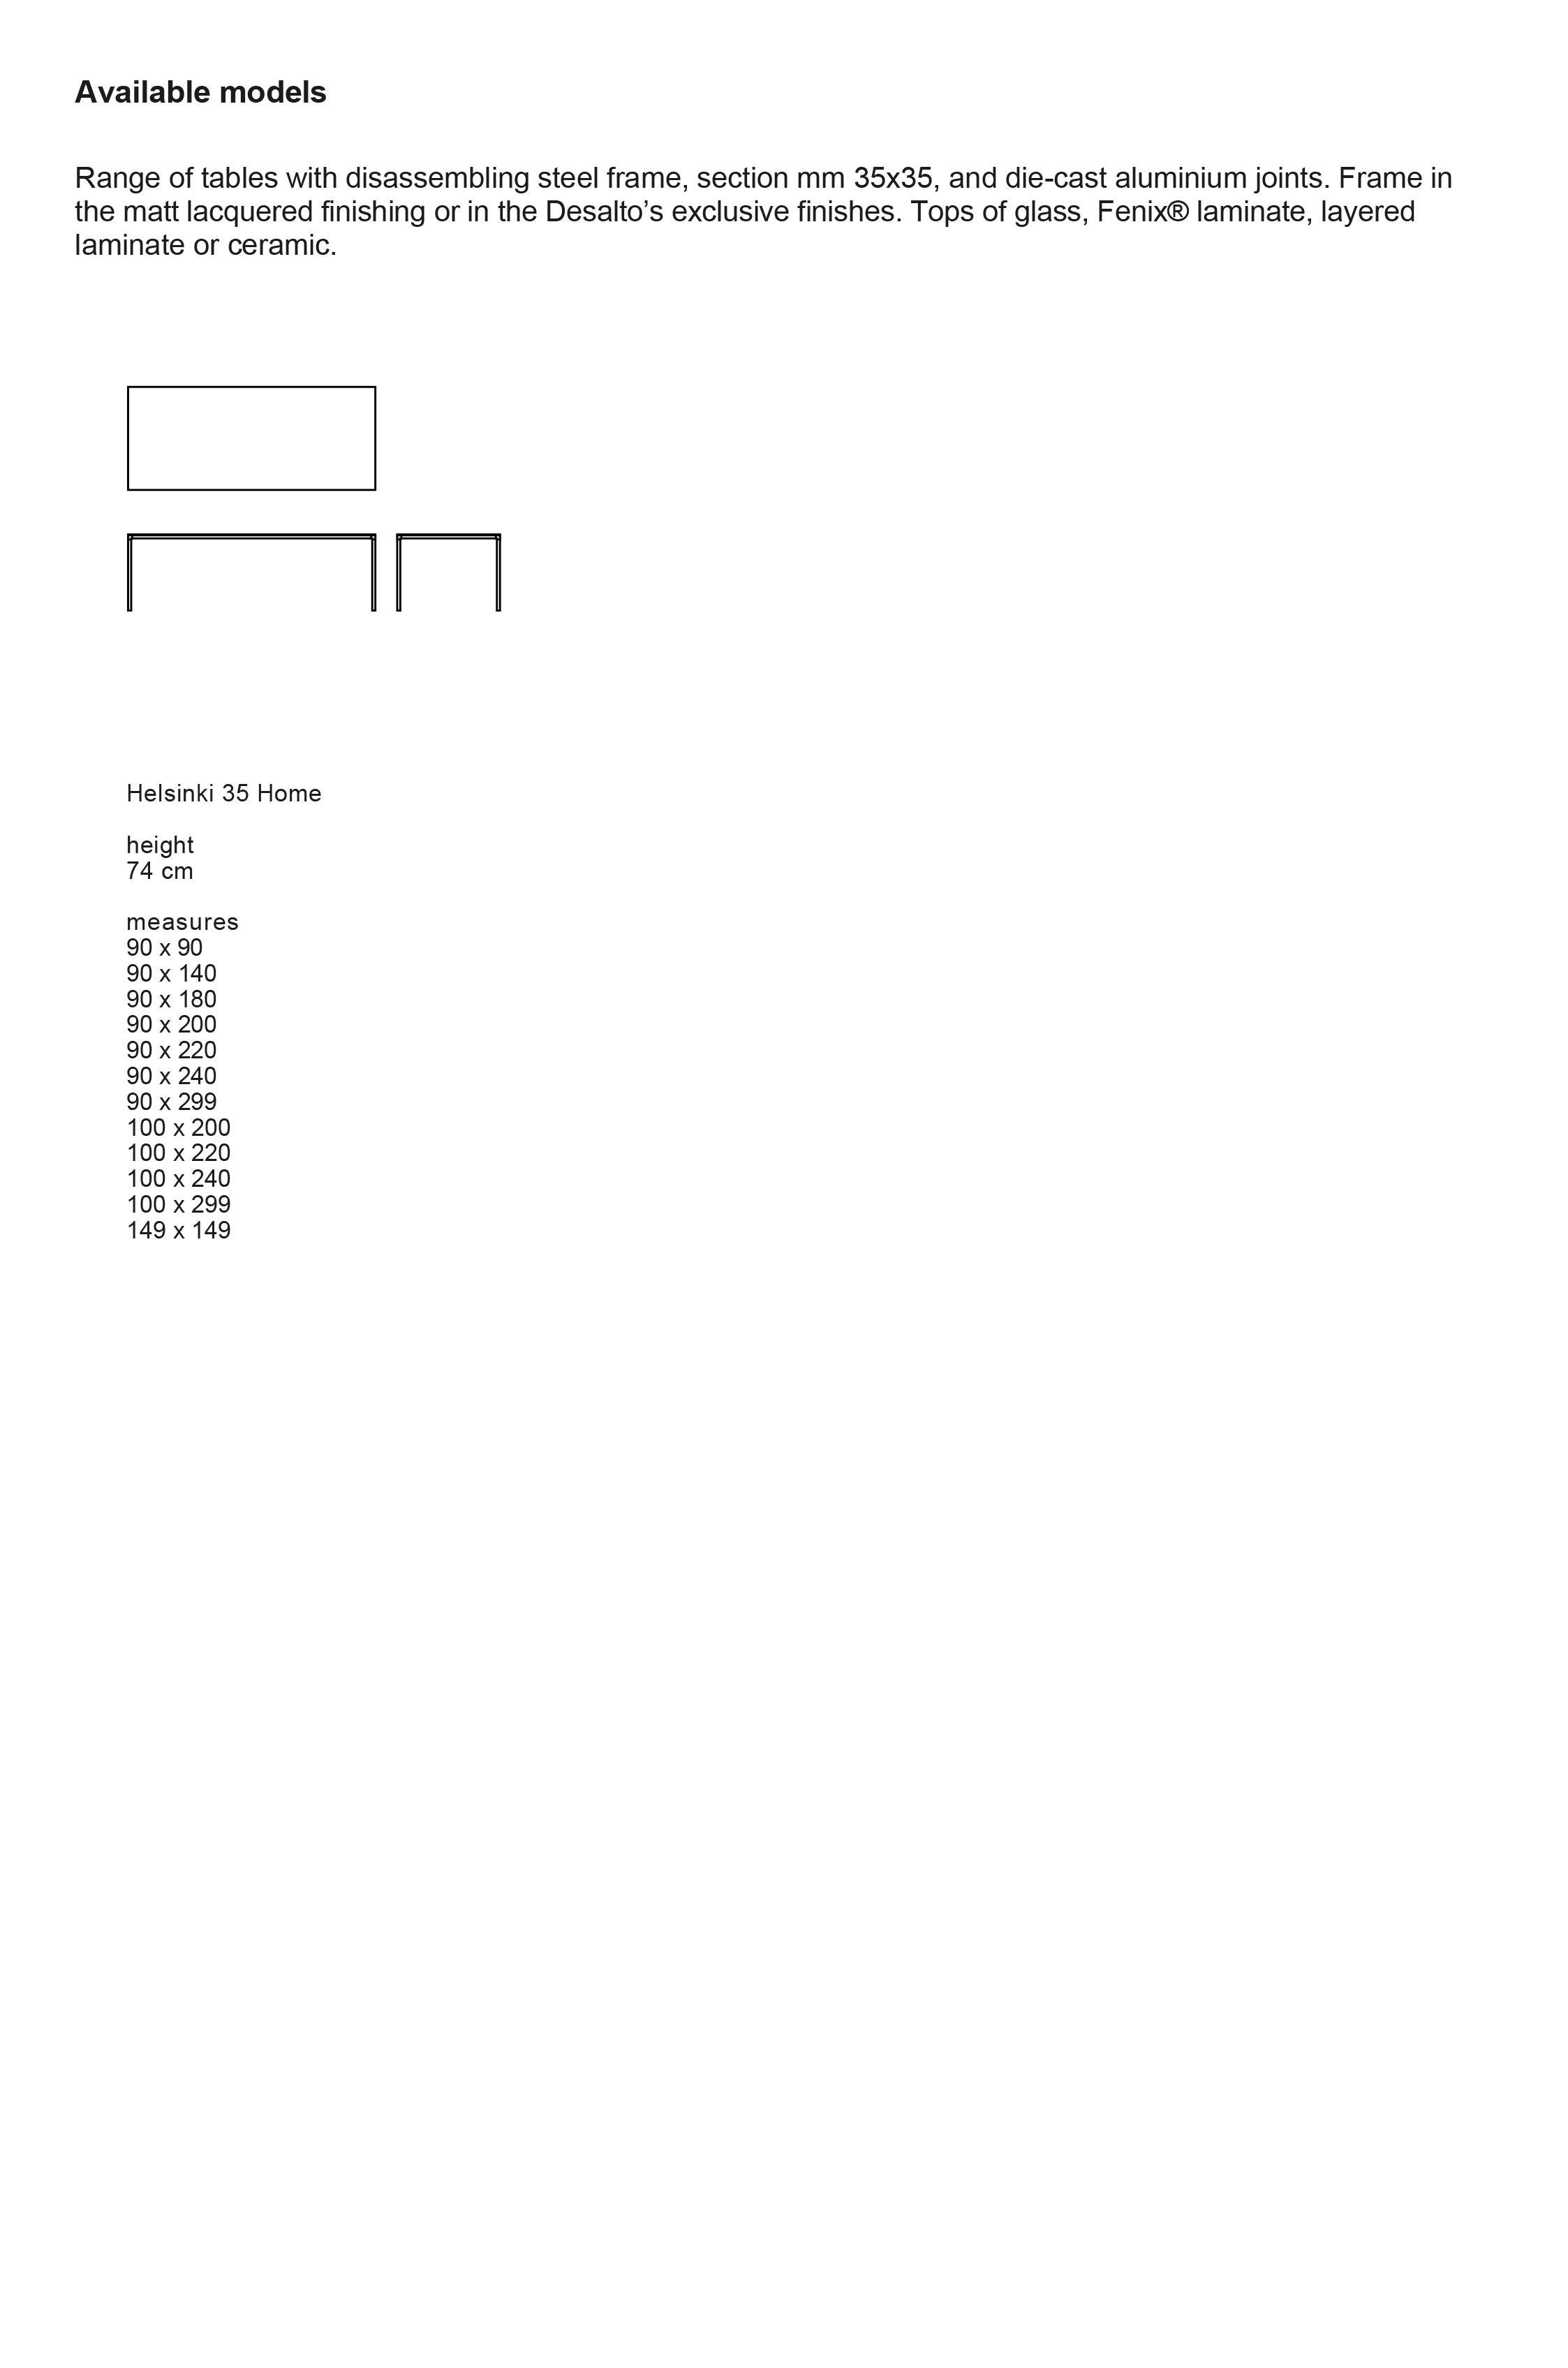 Céramique Table d'appoint personnalisable Desalto Helsinki 35 Home en céramique de Caronni + Bonanomi en vente